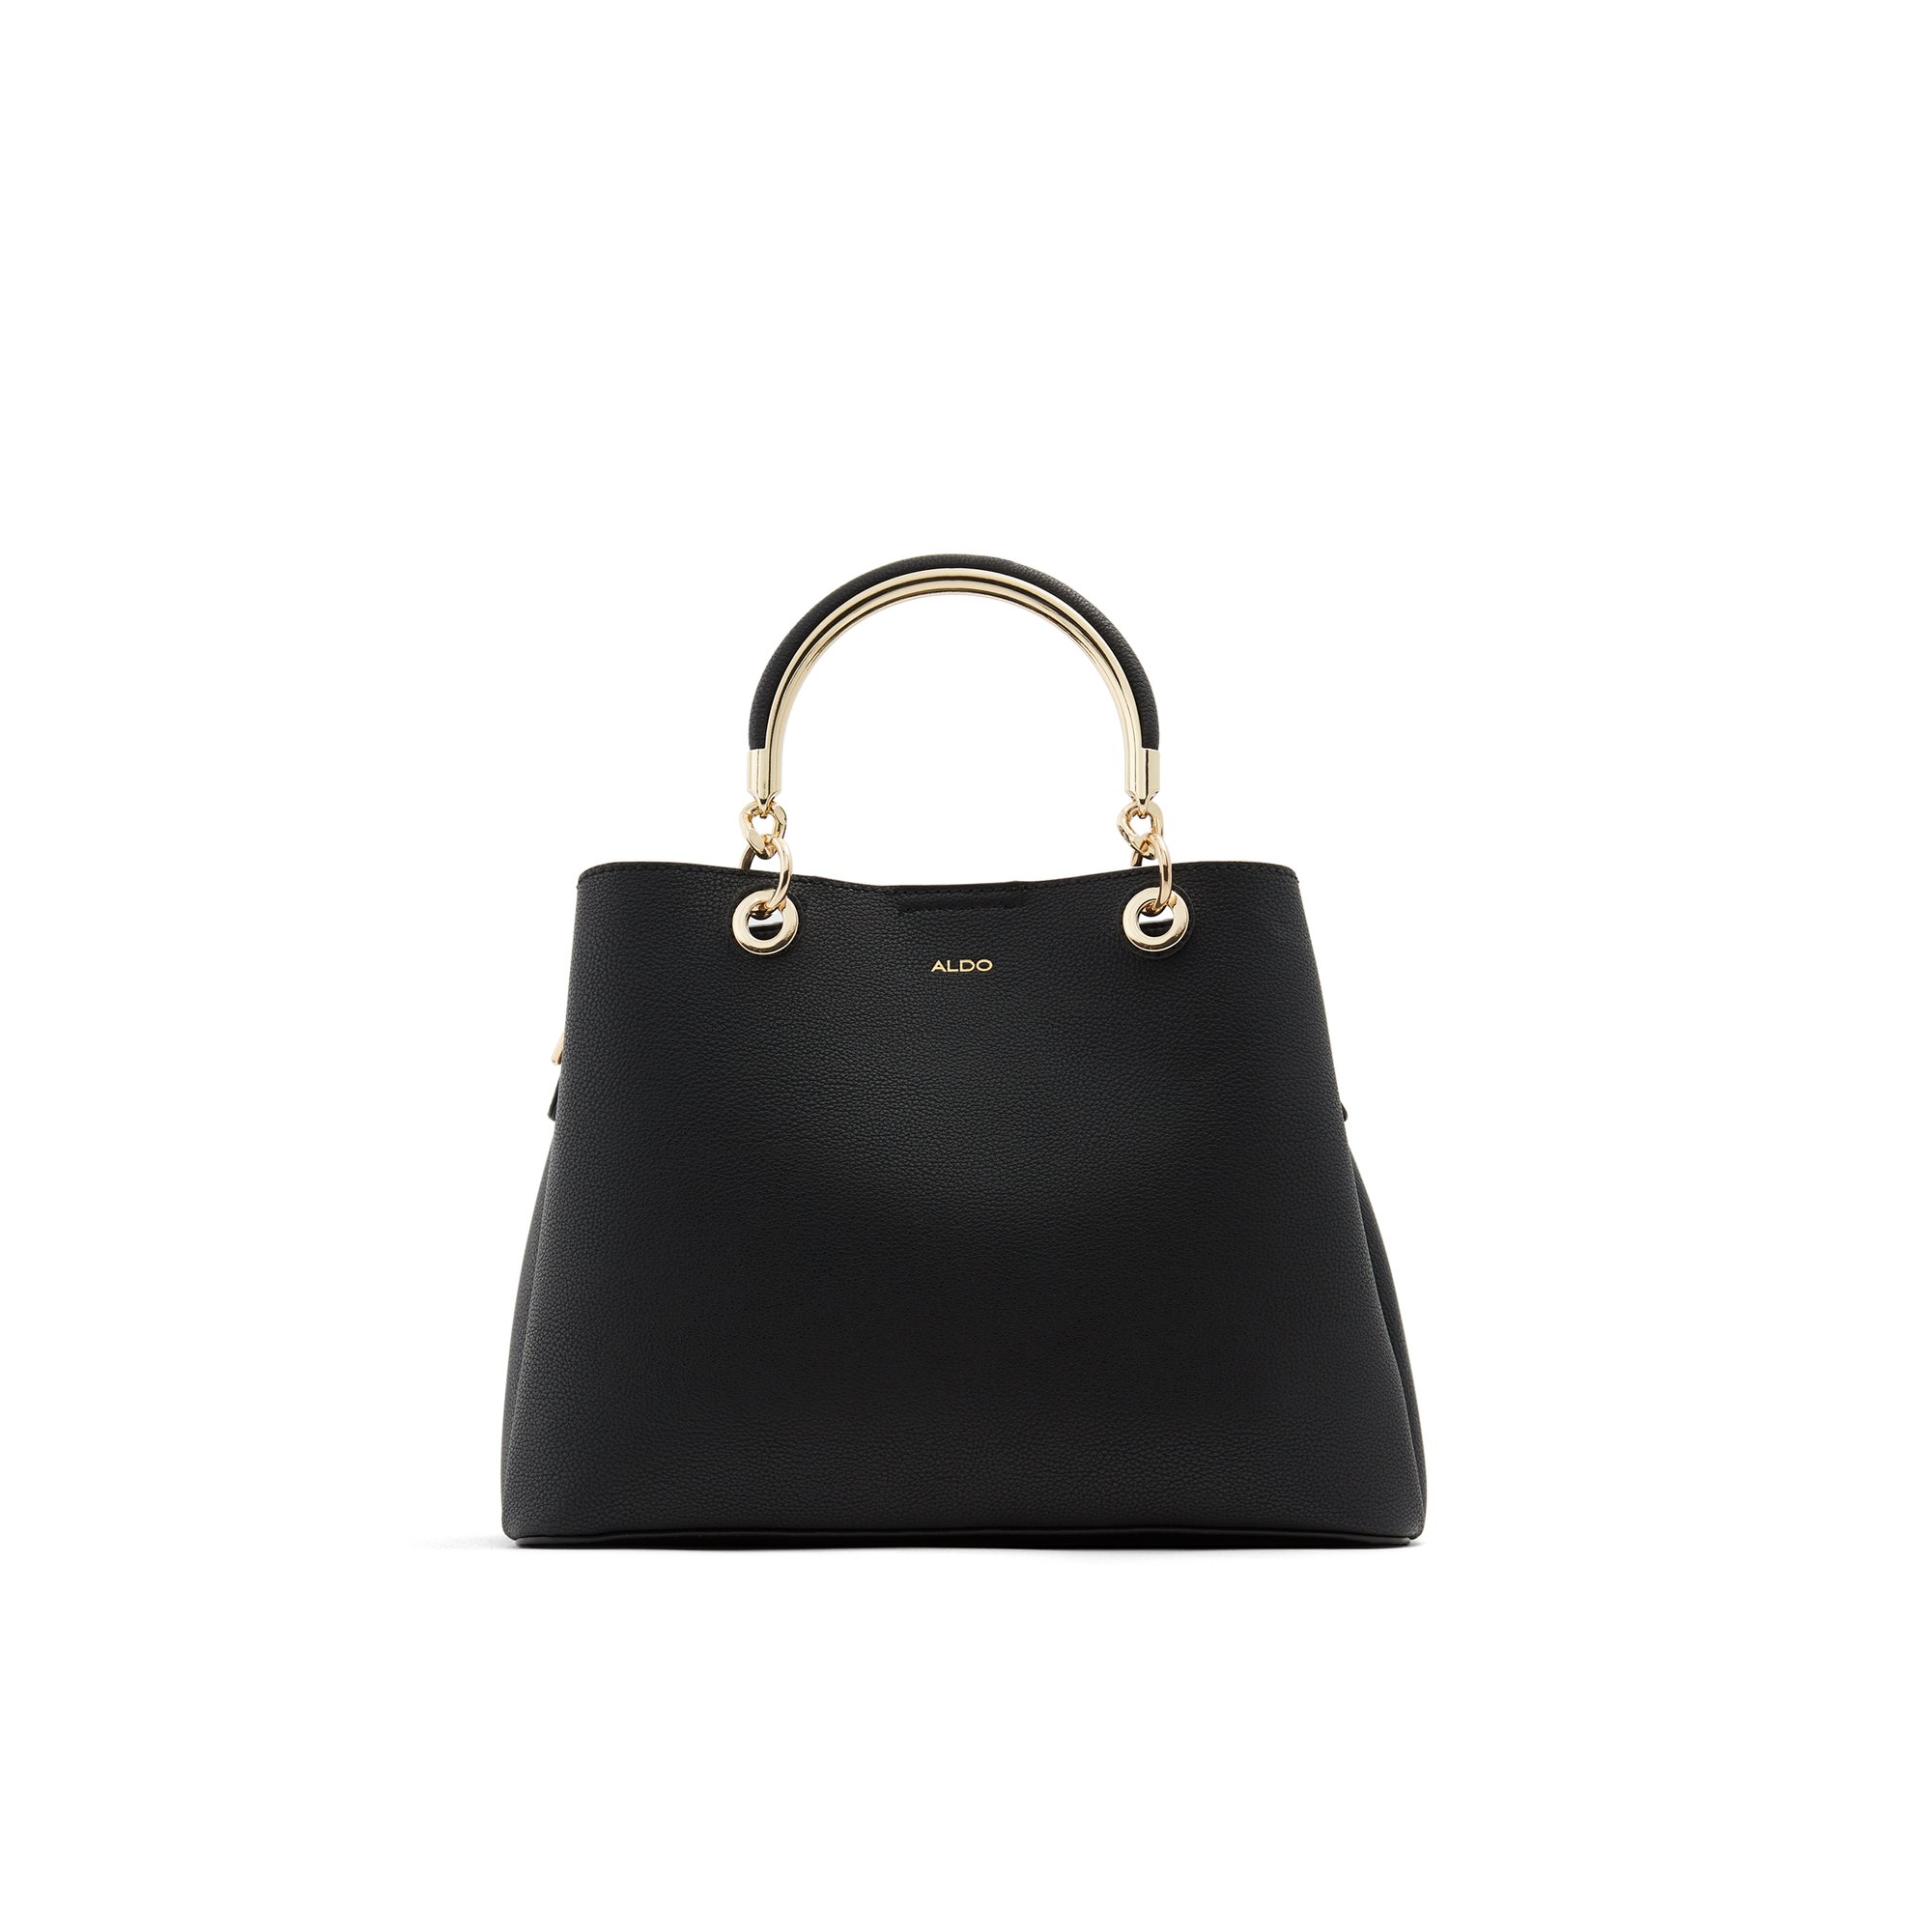 ALDO Surgoine - Women's Handbags Totes - Black